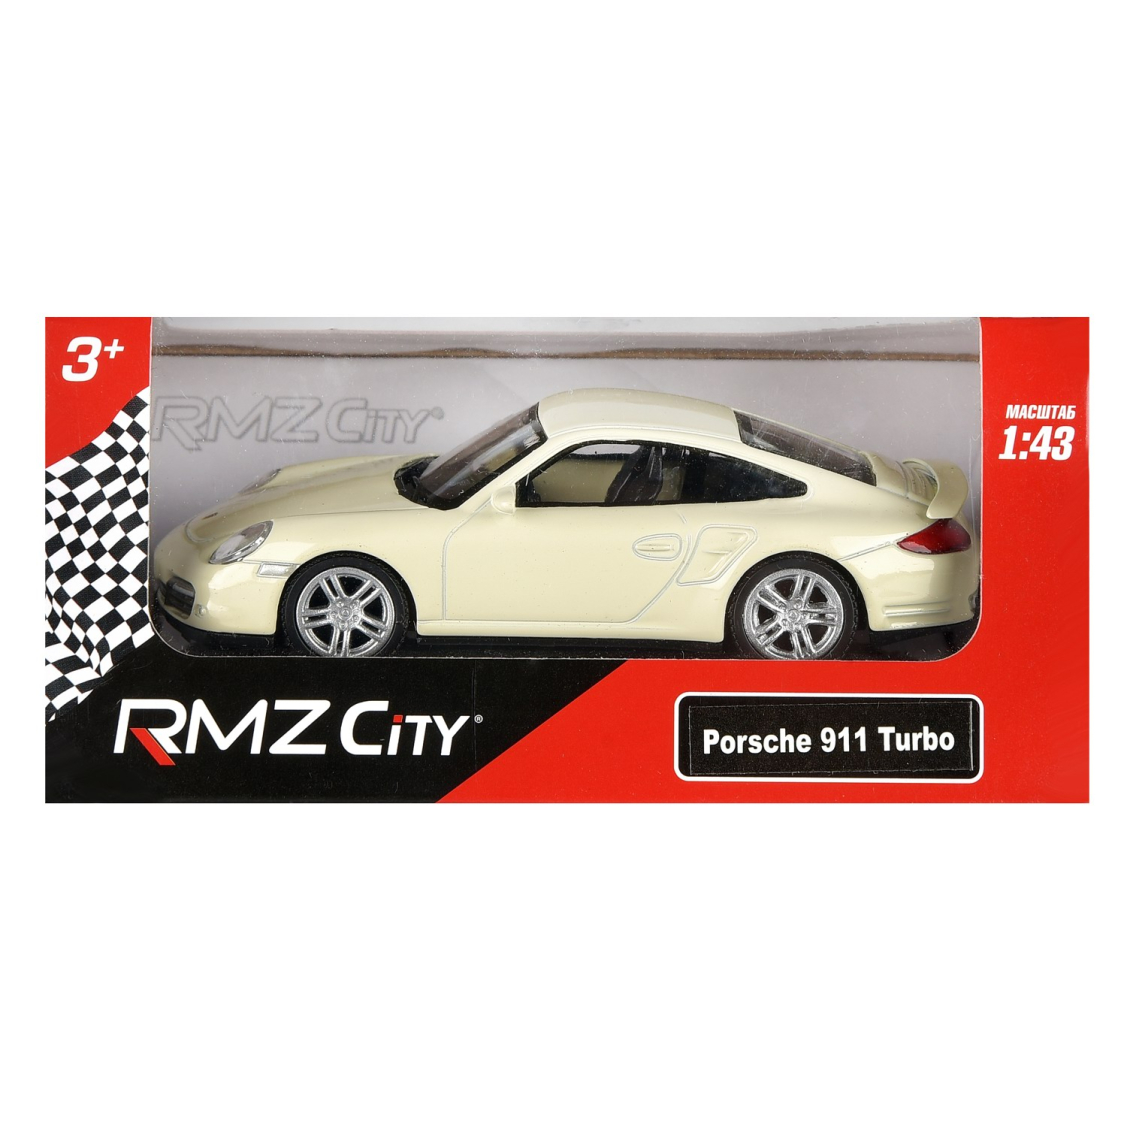 Машинка металлическая Uni-Fortune RMZ City 1:43 Porsche 911 Turbo, без механизмов, 2 цвета (красный/белый)